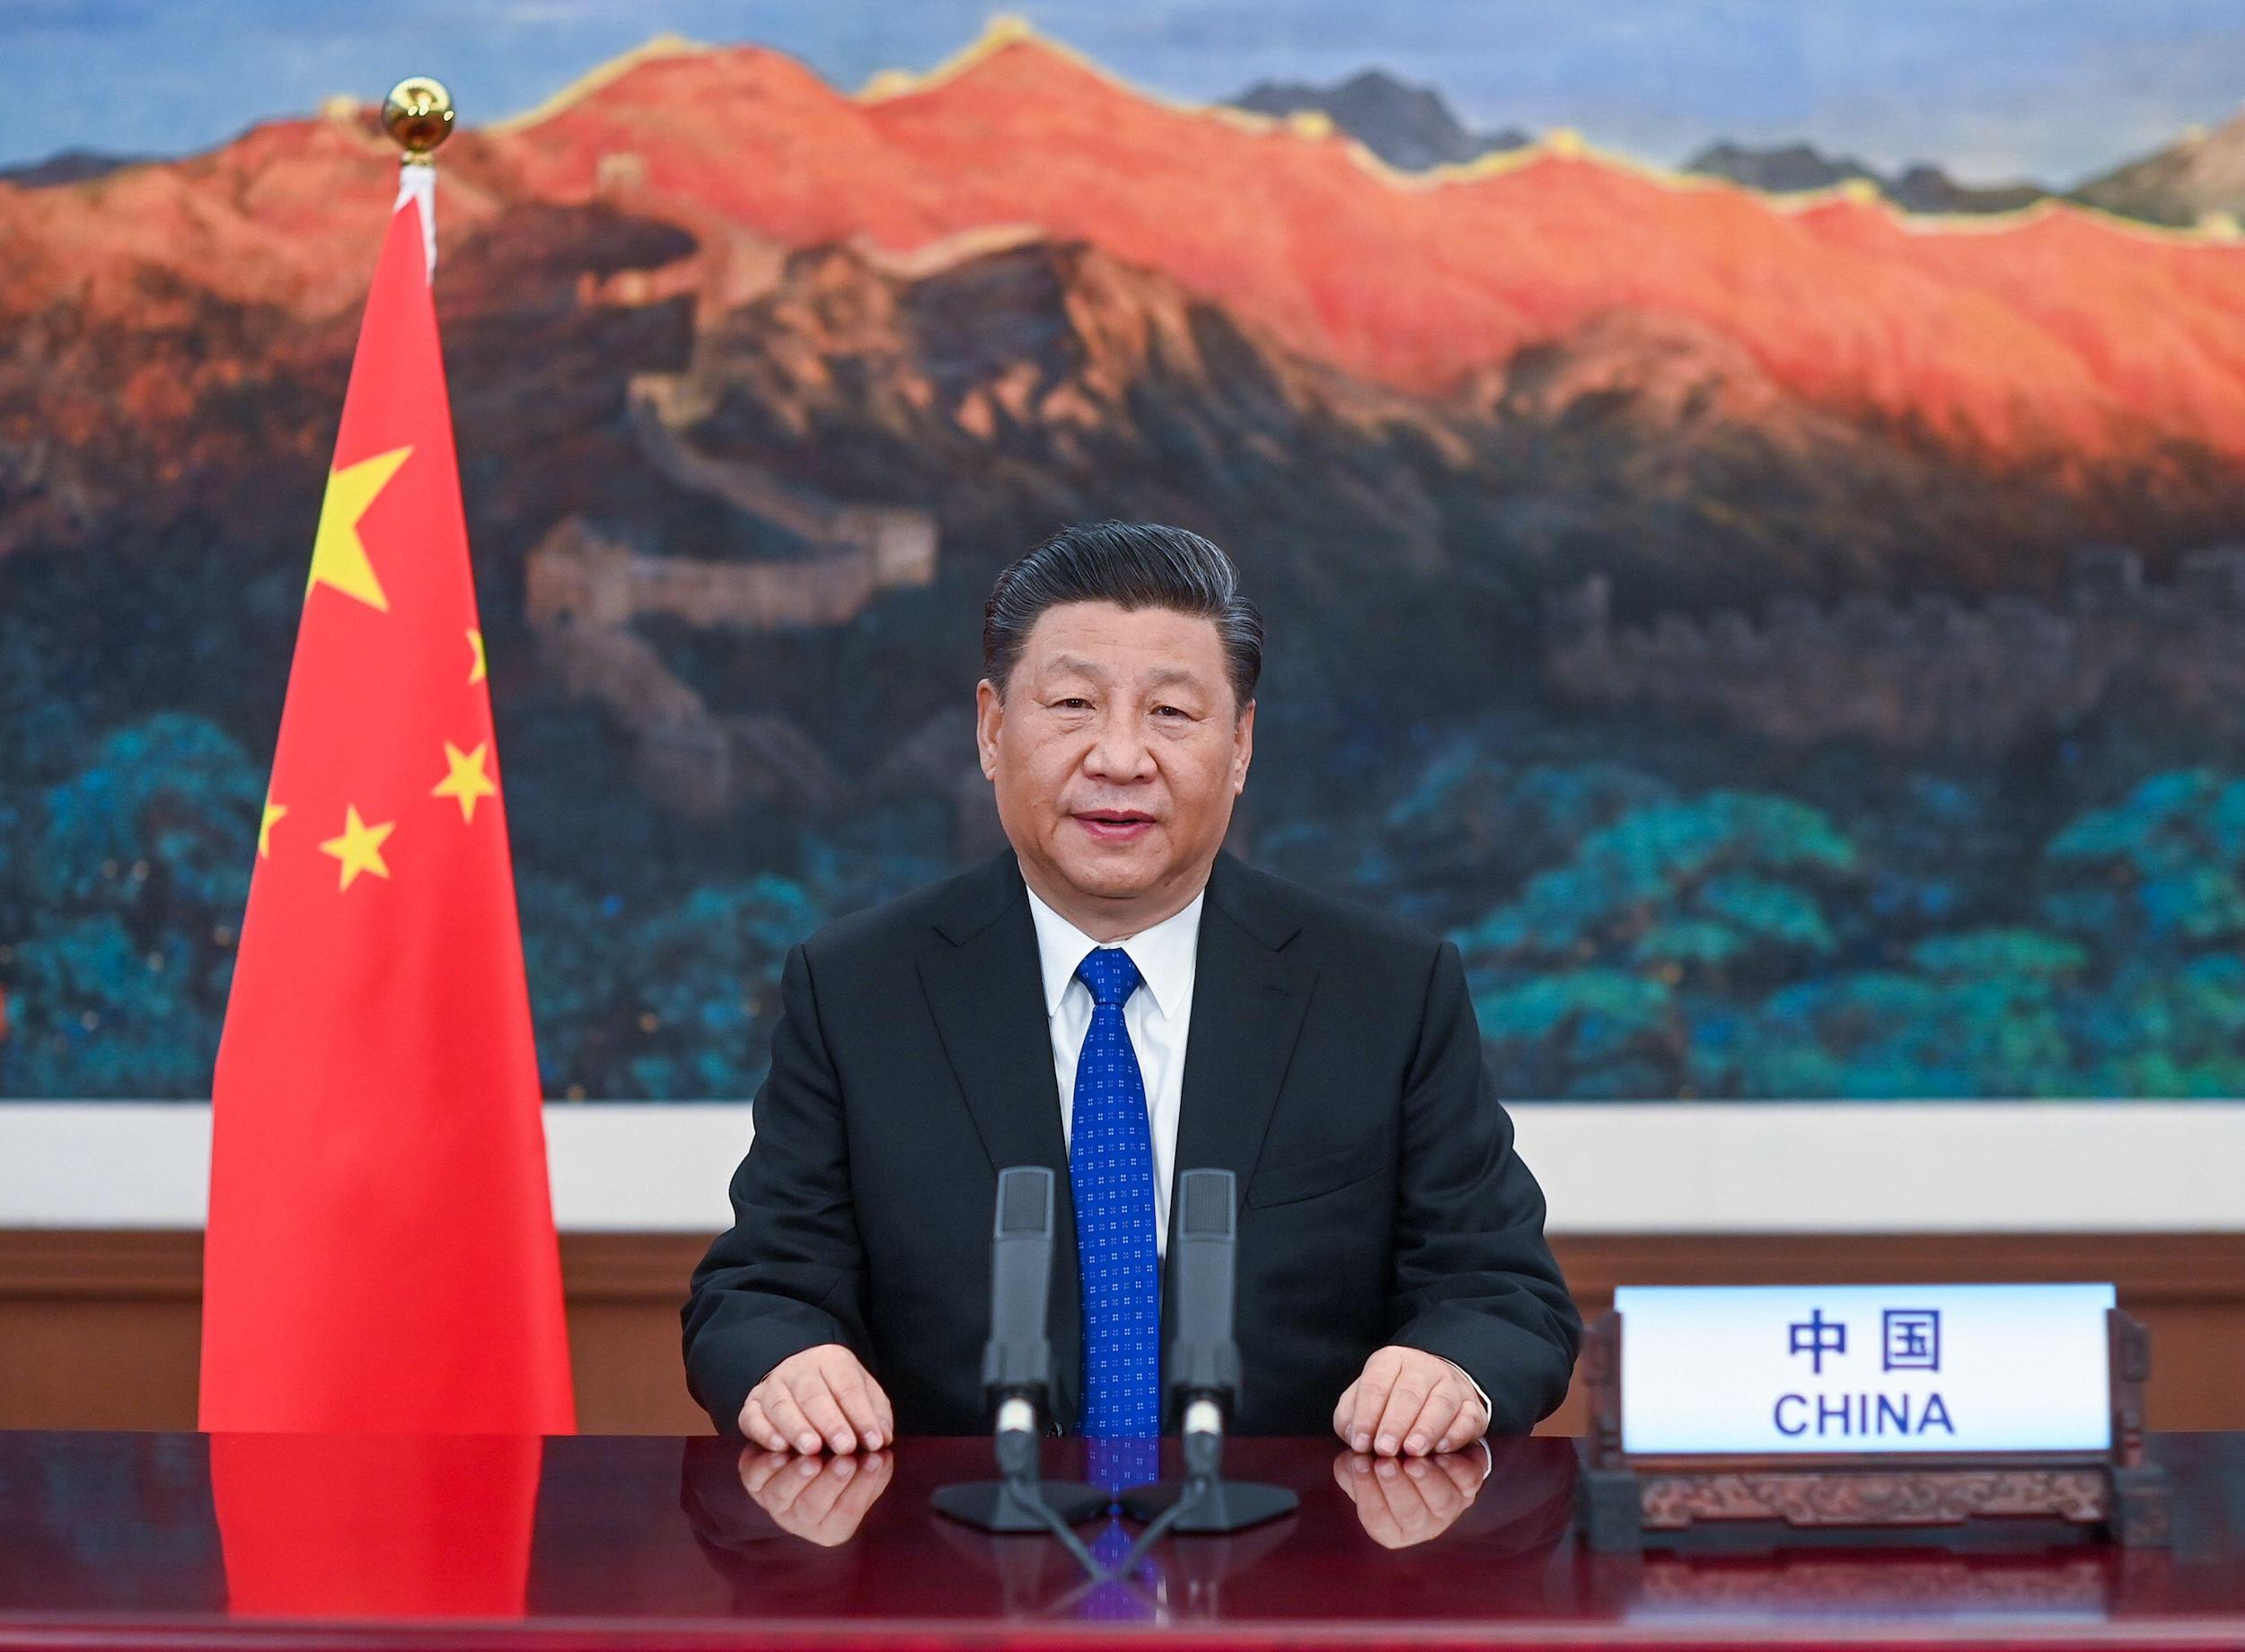 Xi Jinping, Beijing, China Xinhua/Alamy